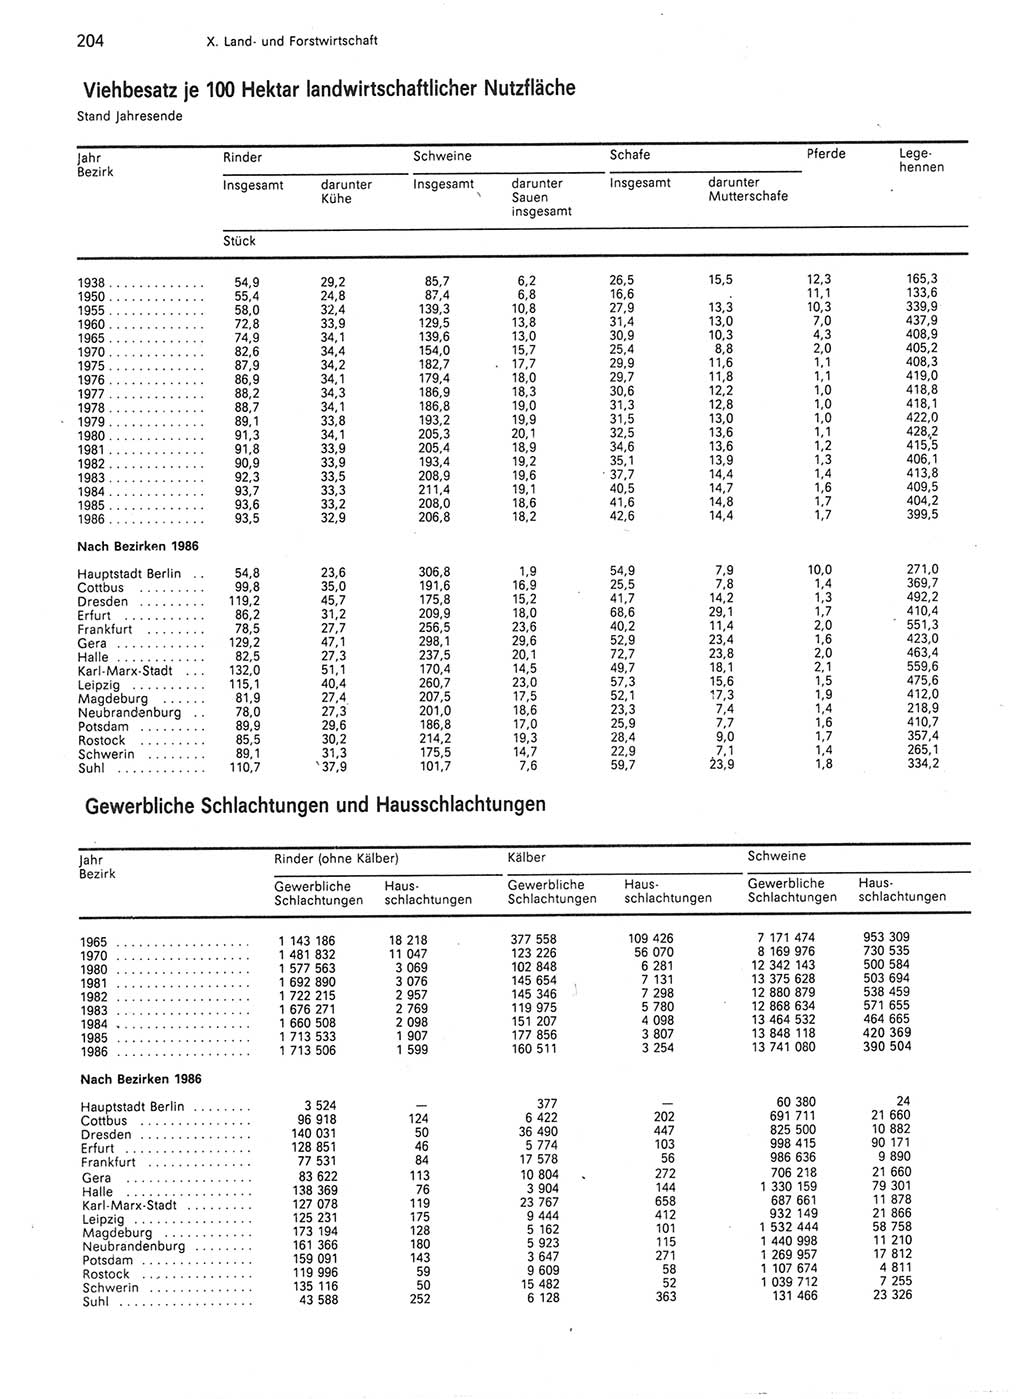 Statistisches Jahrbuch der Deutschen Demokratischen Republik (DDR) 1987, Seite 204 (Stat. Jb. DDR 1987, S. 204)